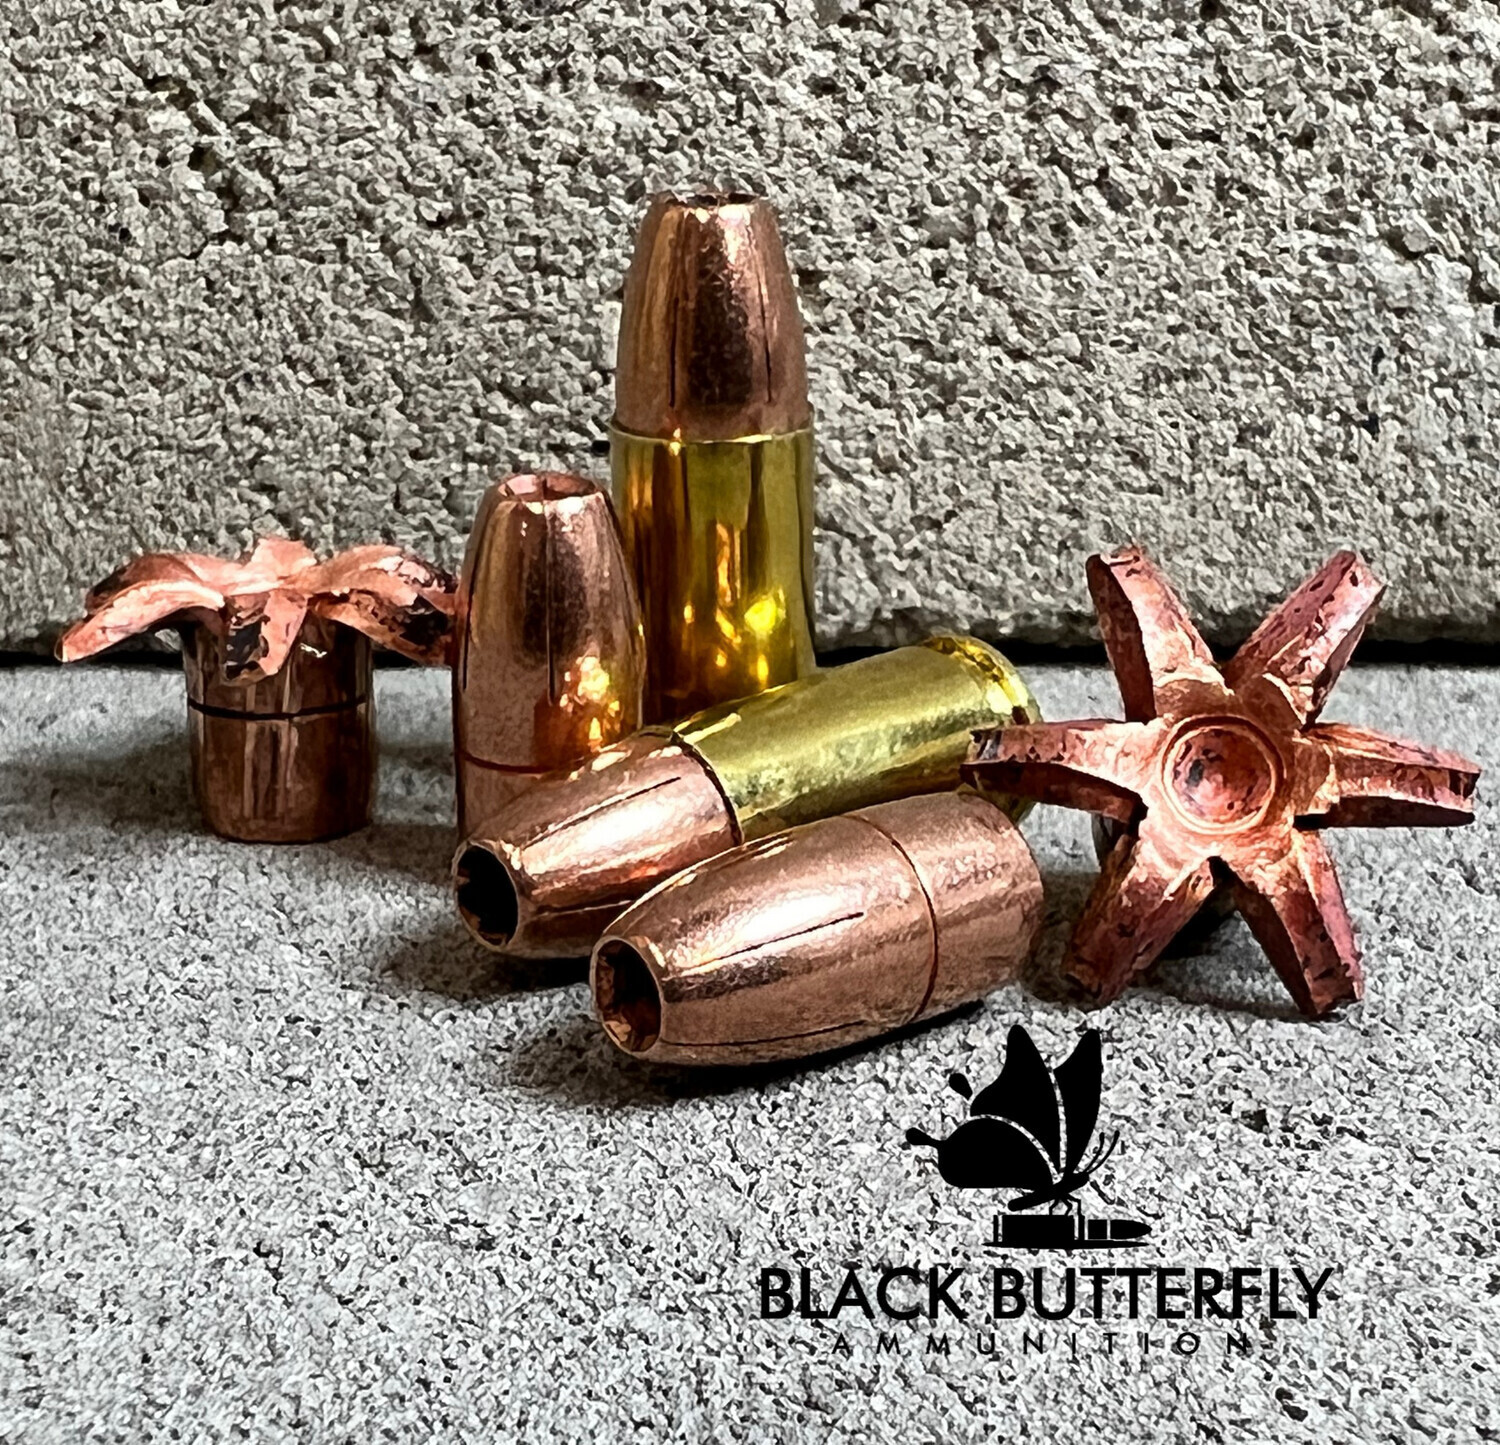 Black Butterfly Ammunition, Premium Self Defense Ammunition, 9mm Luger, 115 gr +P TCX (Total Copper Expanding) Solid Copper Self Defense Ammunition , 50 Rounds